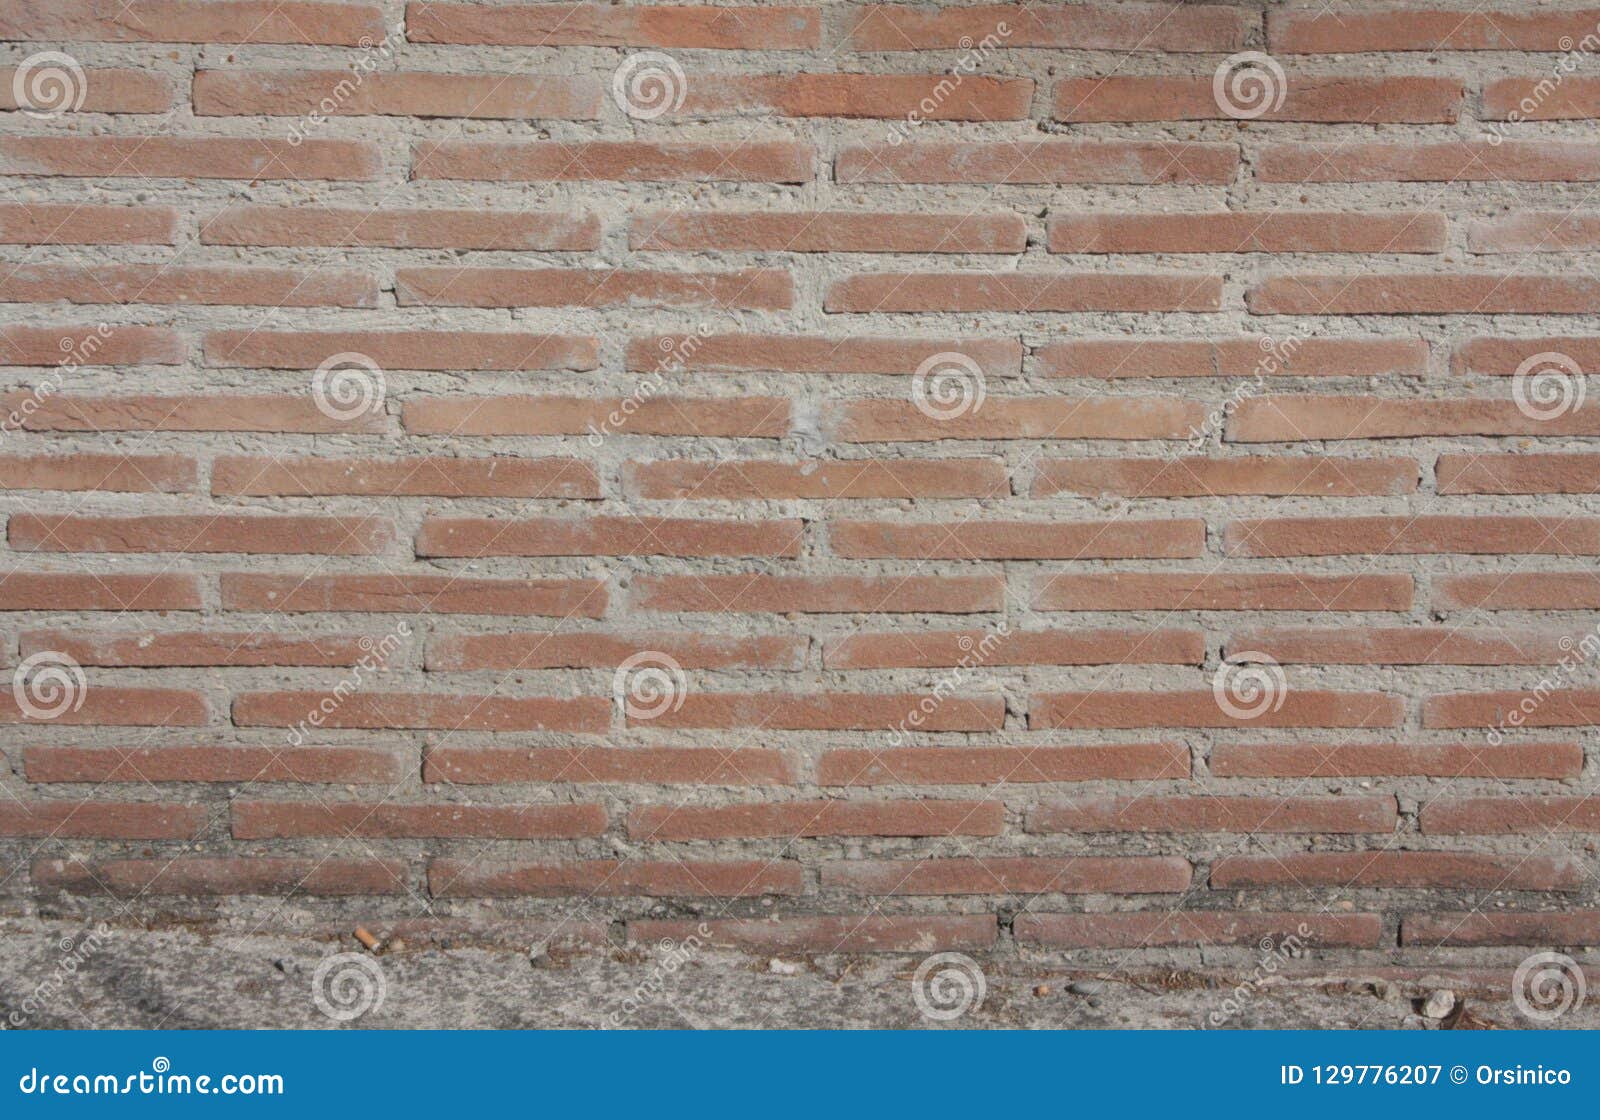 old brick wall. texture of old masonry.